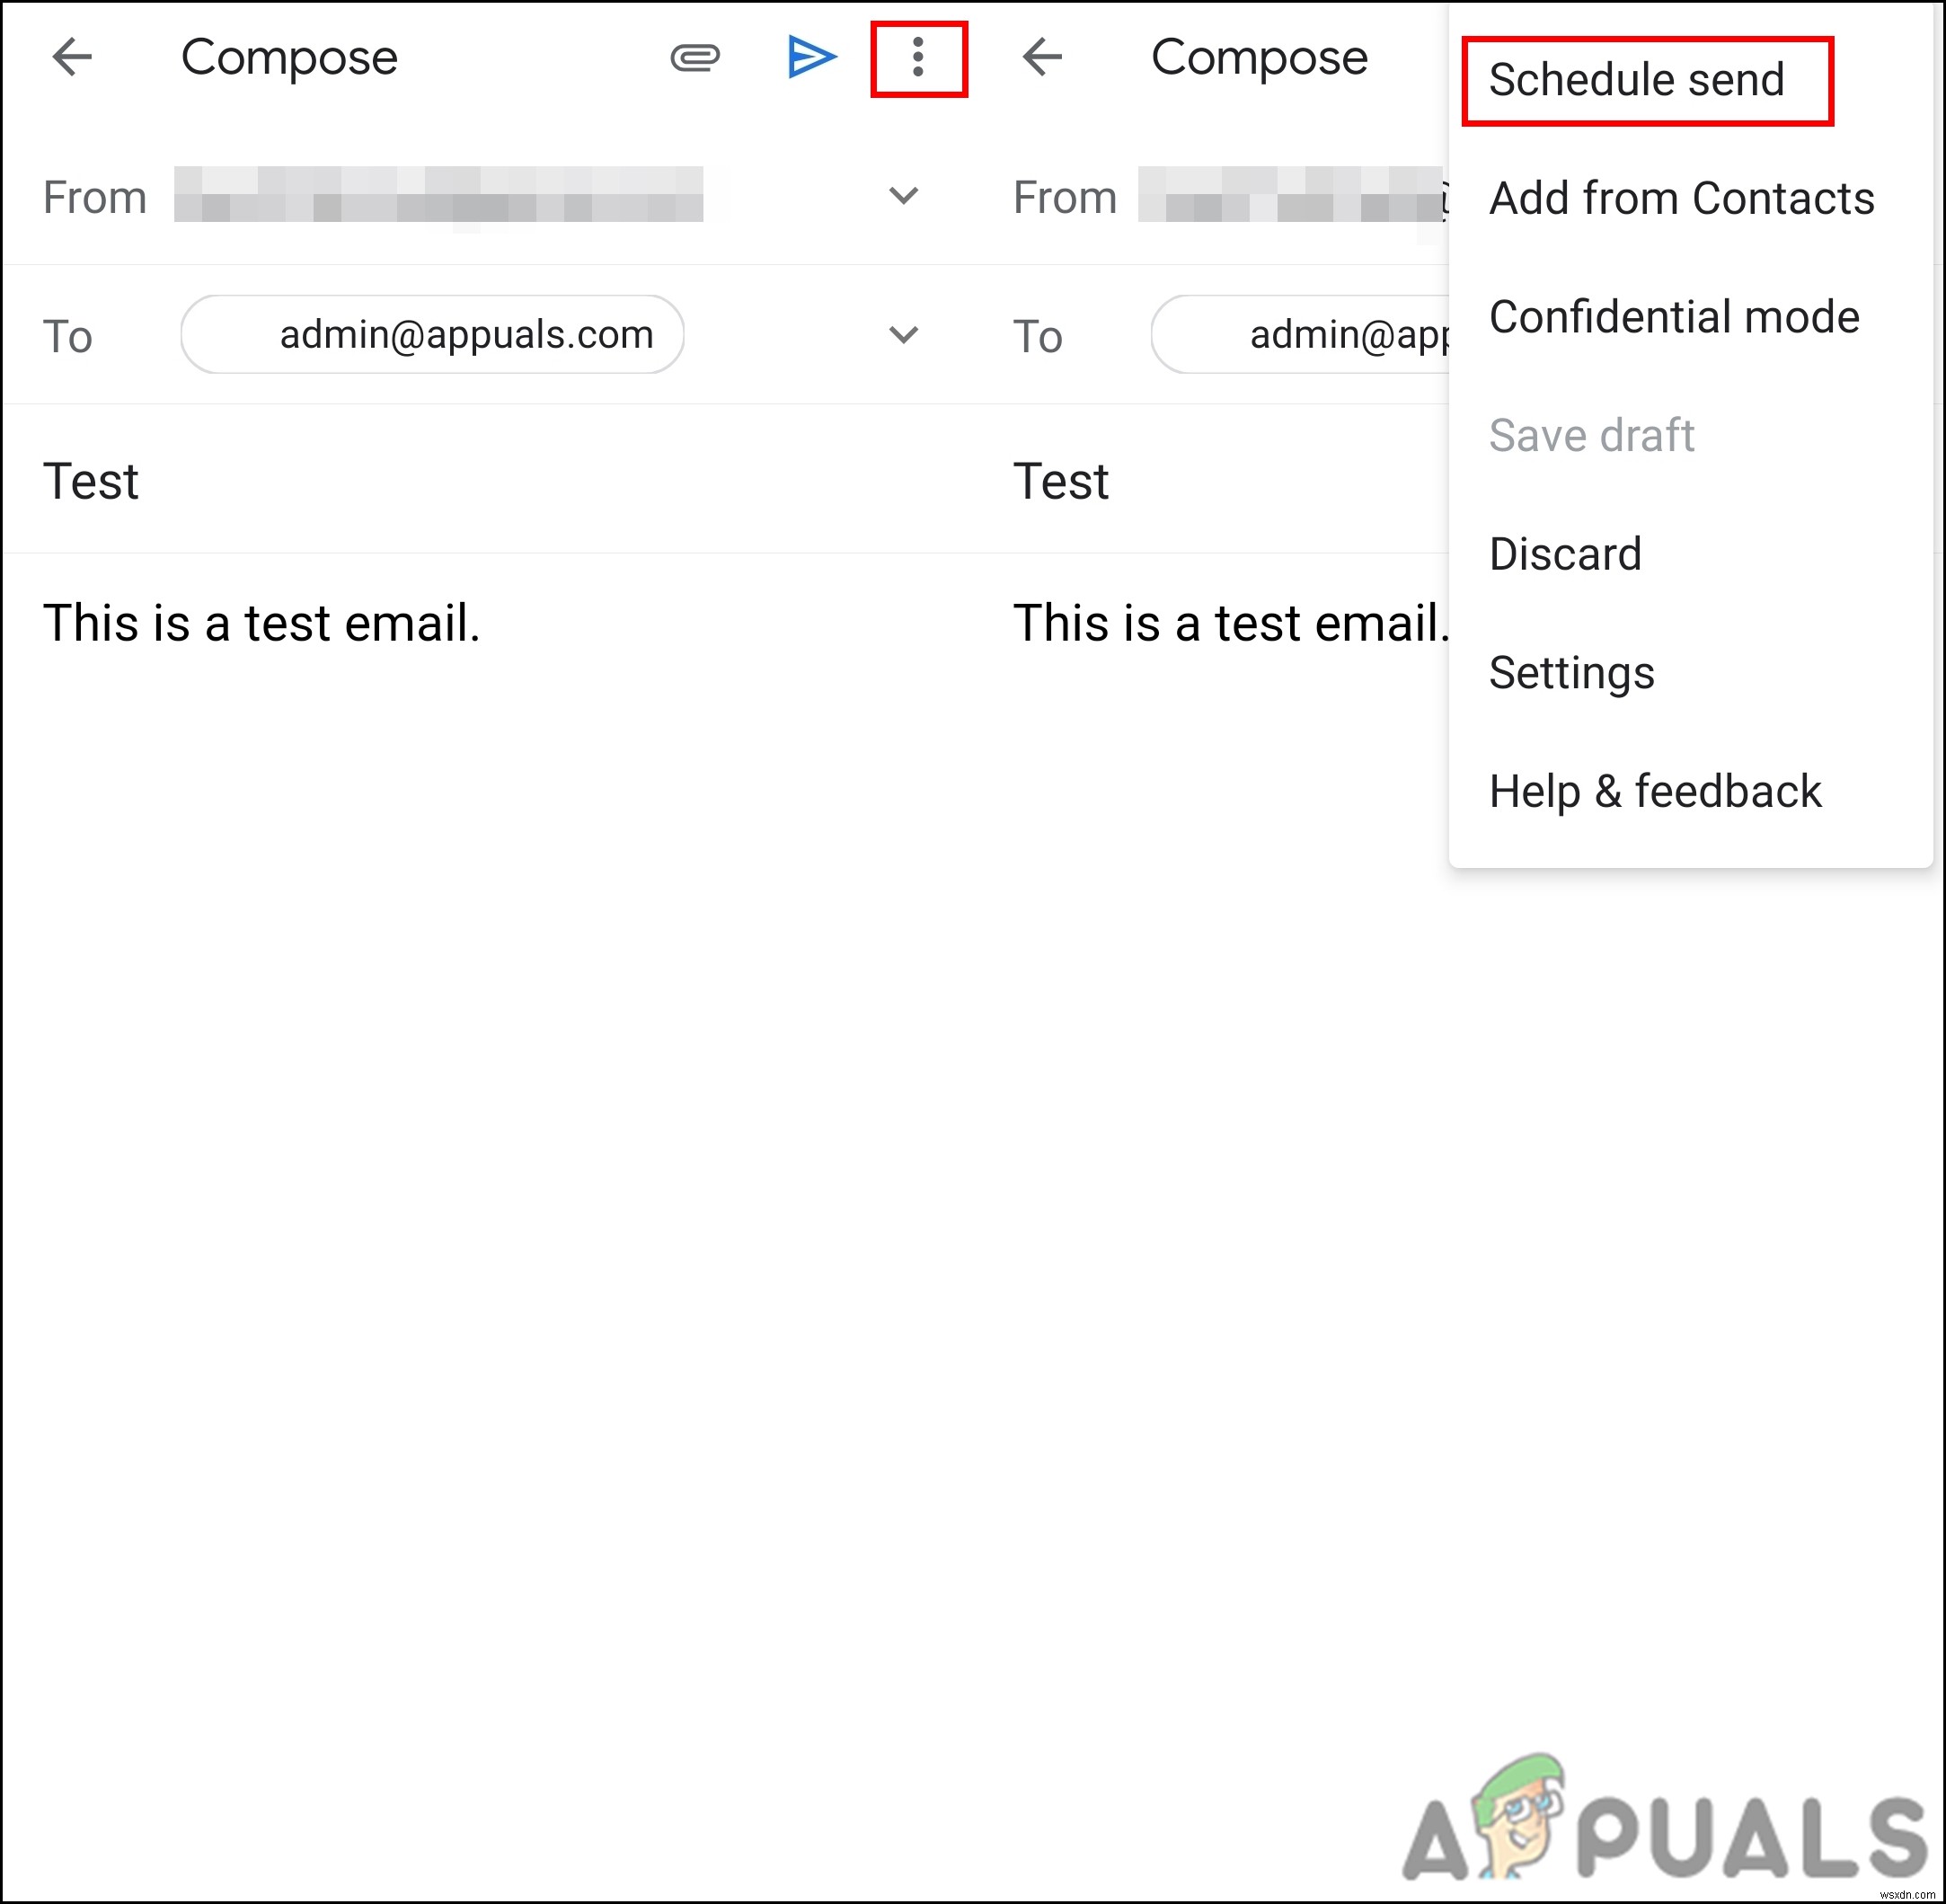 จะกำหนดเวลาส่งอีเมลใน Gmail ได้อย่างไร